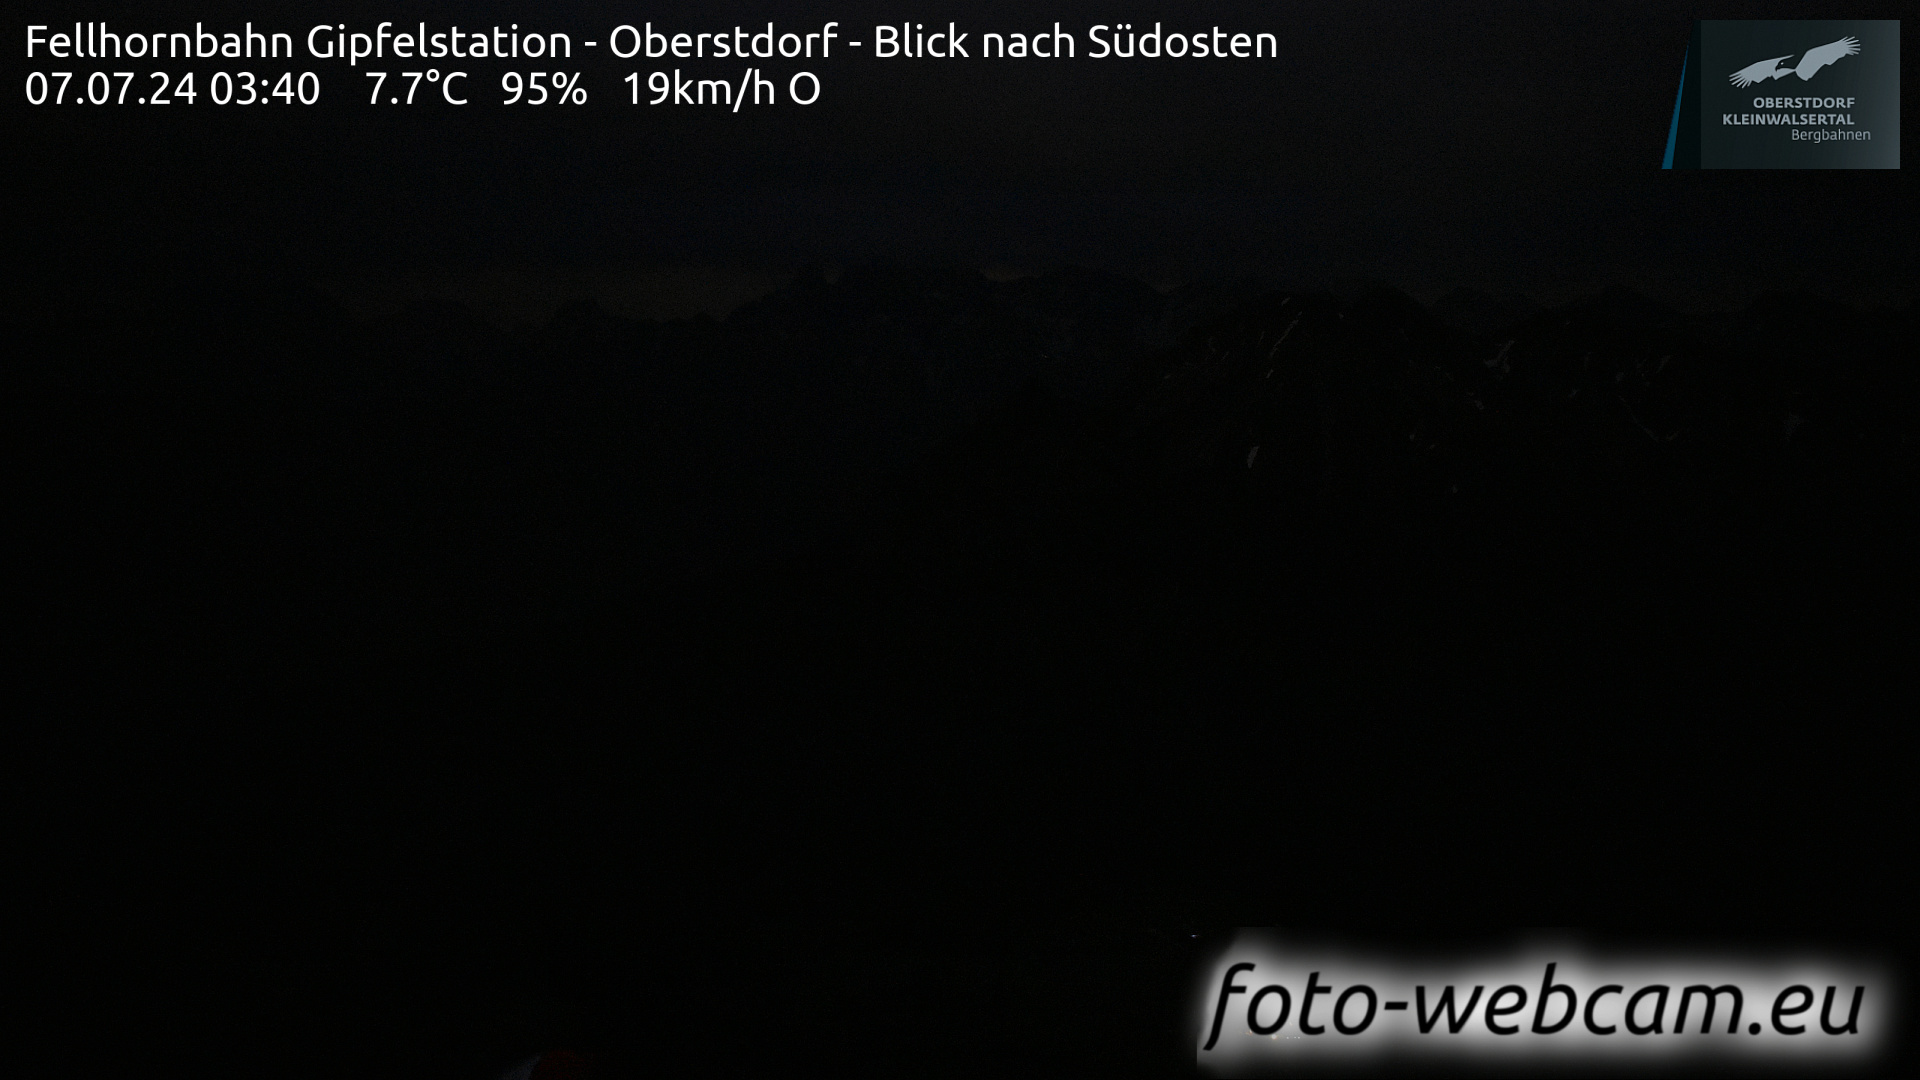 Oberstdorf Thu. 03:49